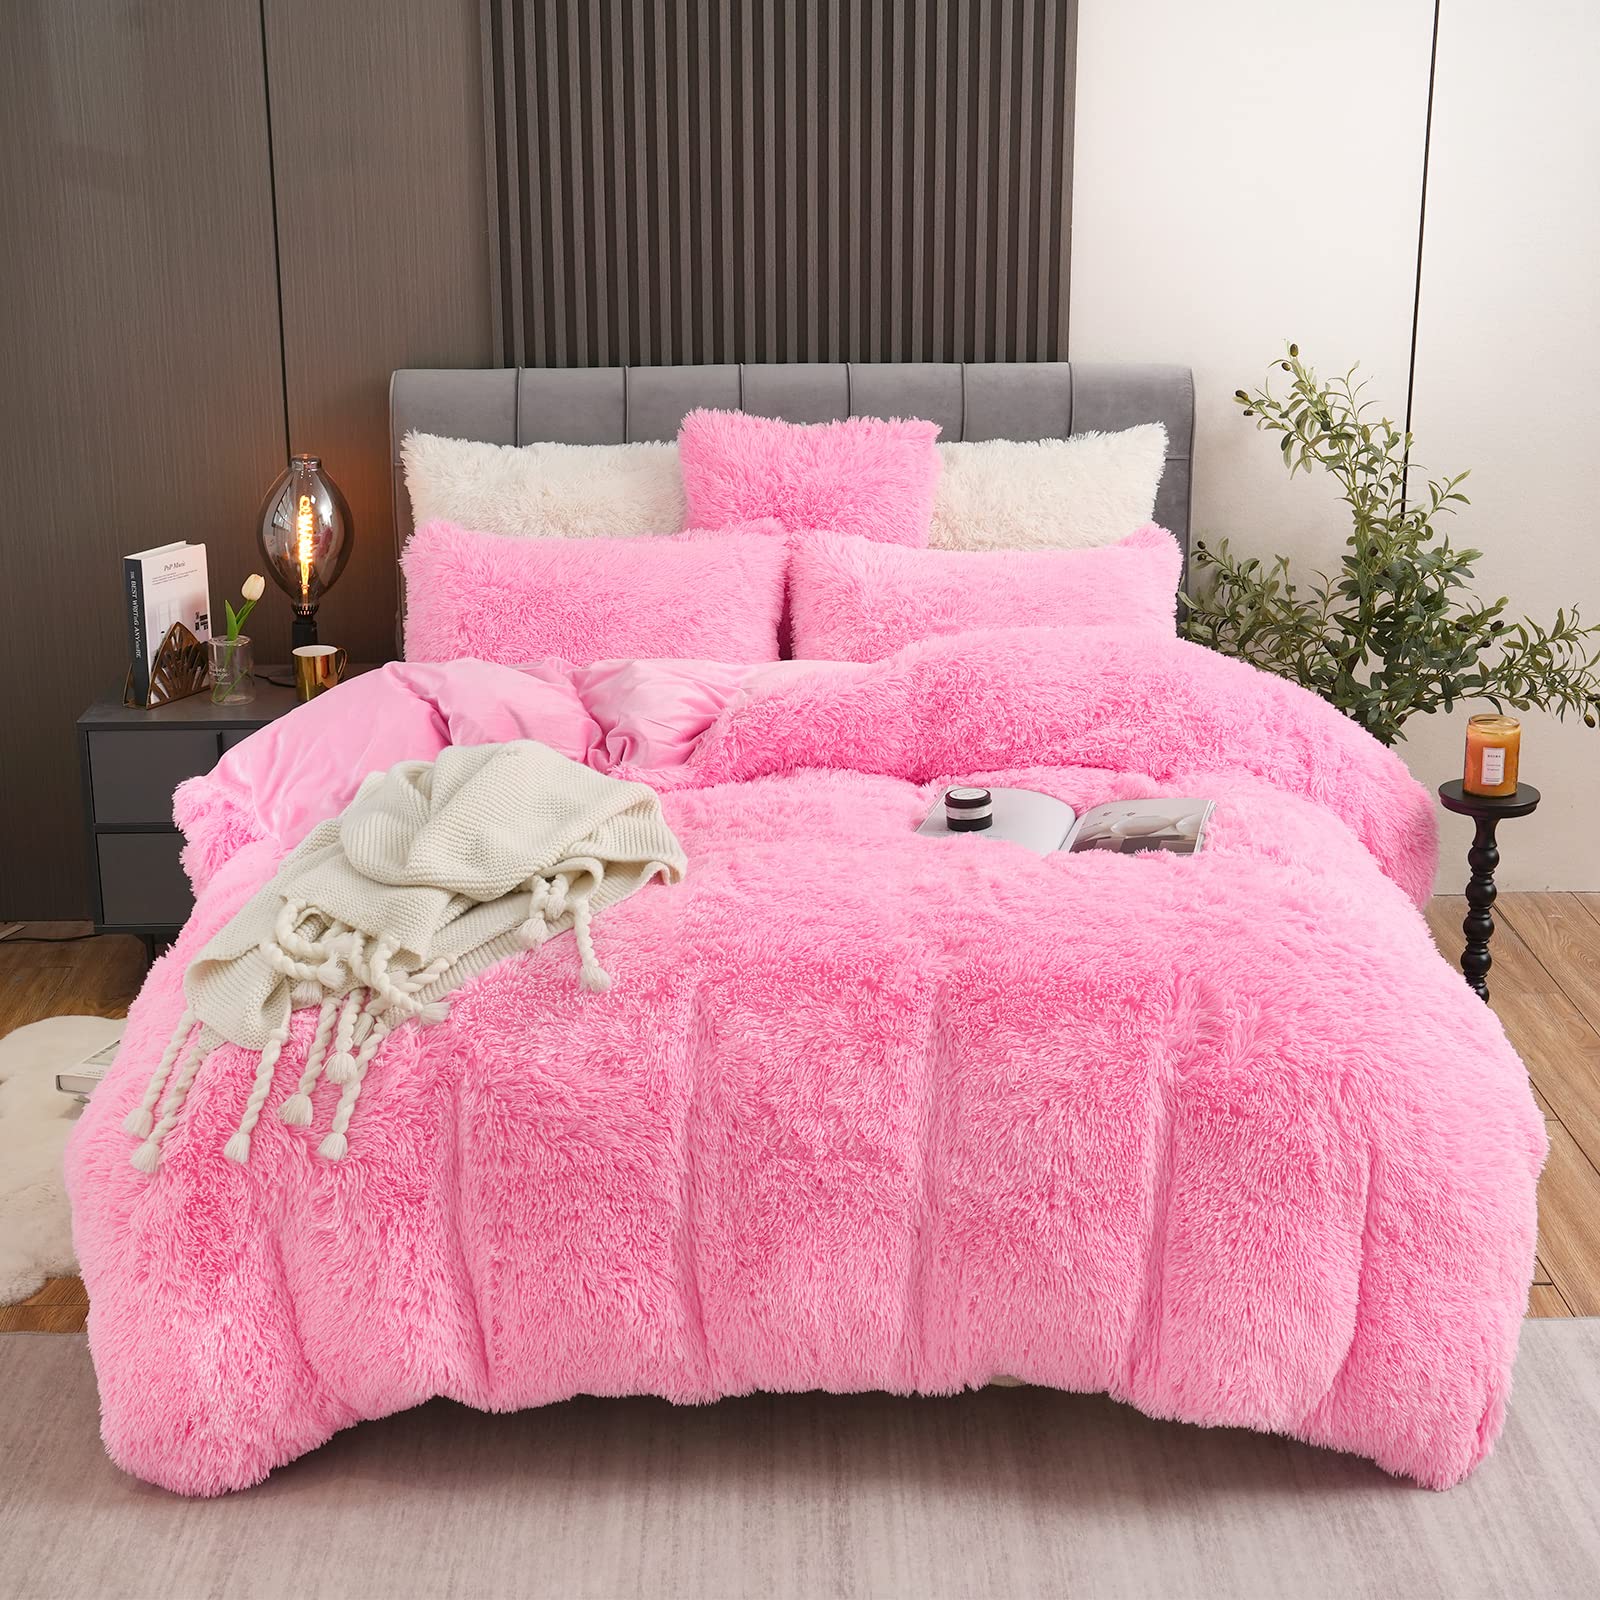 BLEUM CADE Fluffy Plush Pink Duvet Cover Set Twin Size, Luxury Soft Velvet Fuzzy Comforter Cover Bed Sets 3Pcs(1 Faux Fur Duvet Cover + 1 P